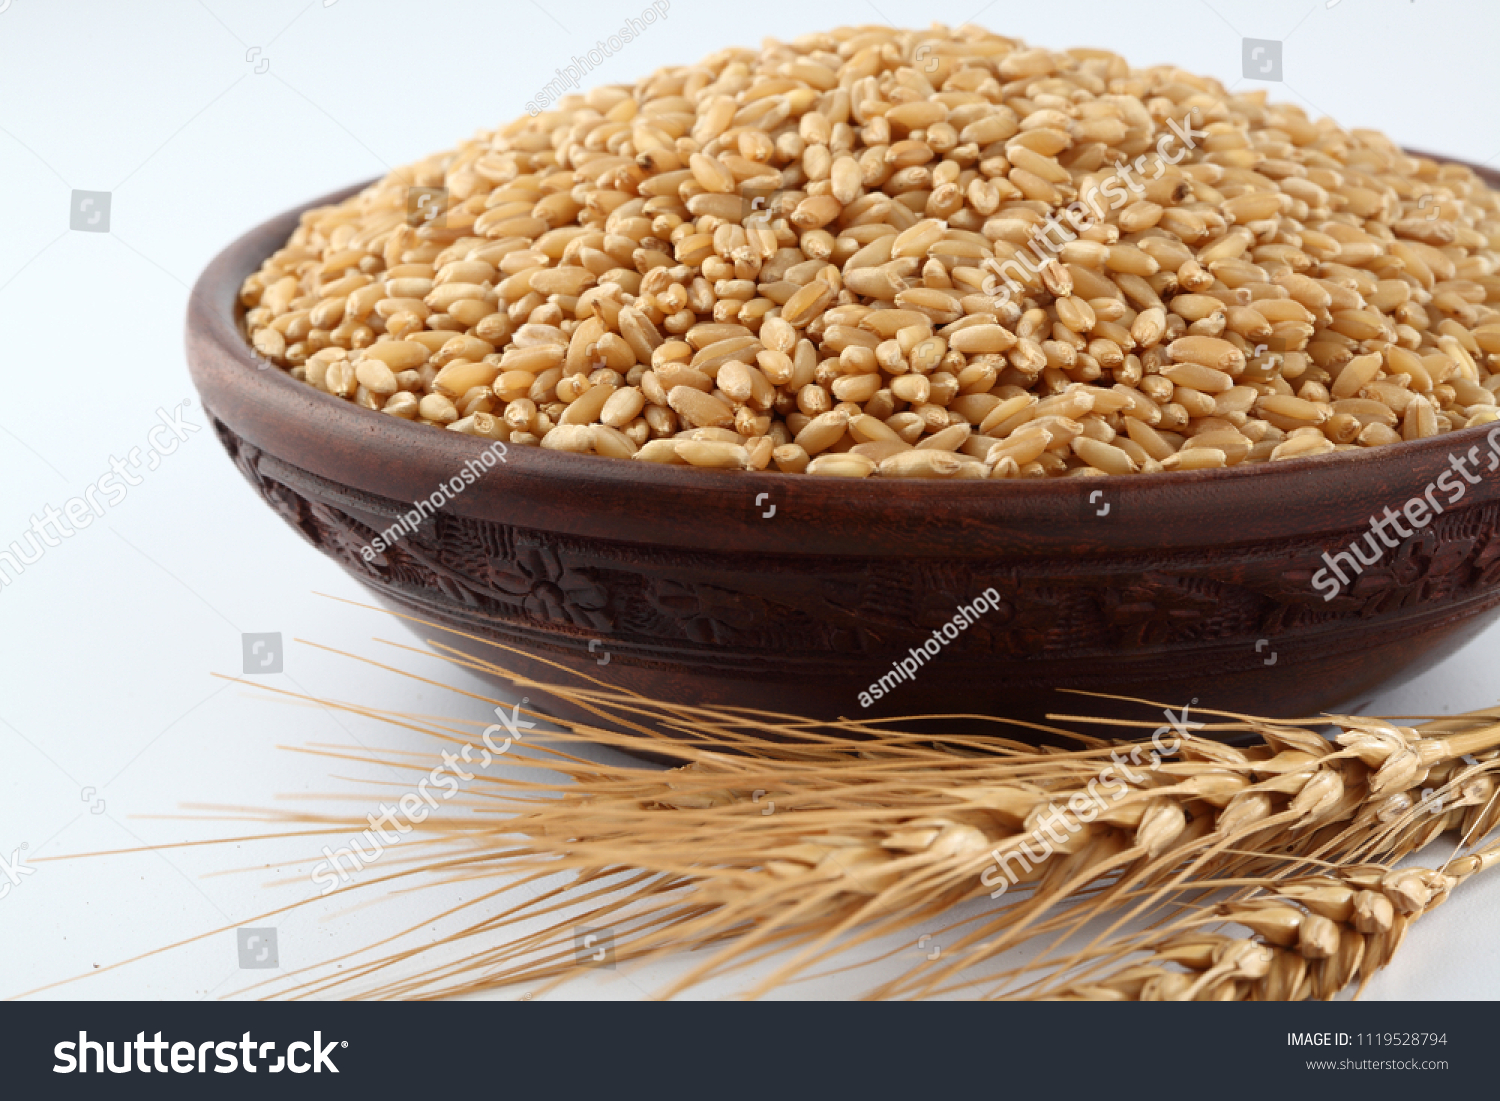 Wheat grains ,Grain of the wheat , whole wheat grains #1119528794